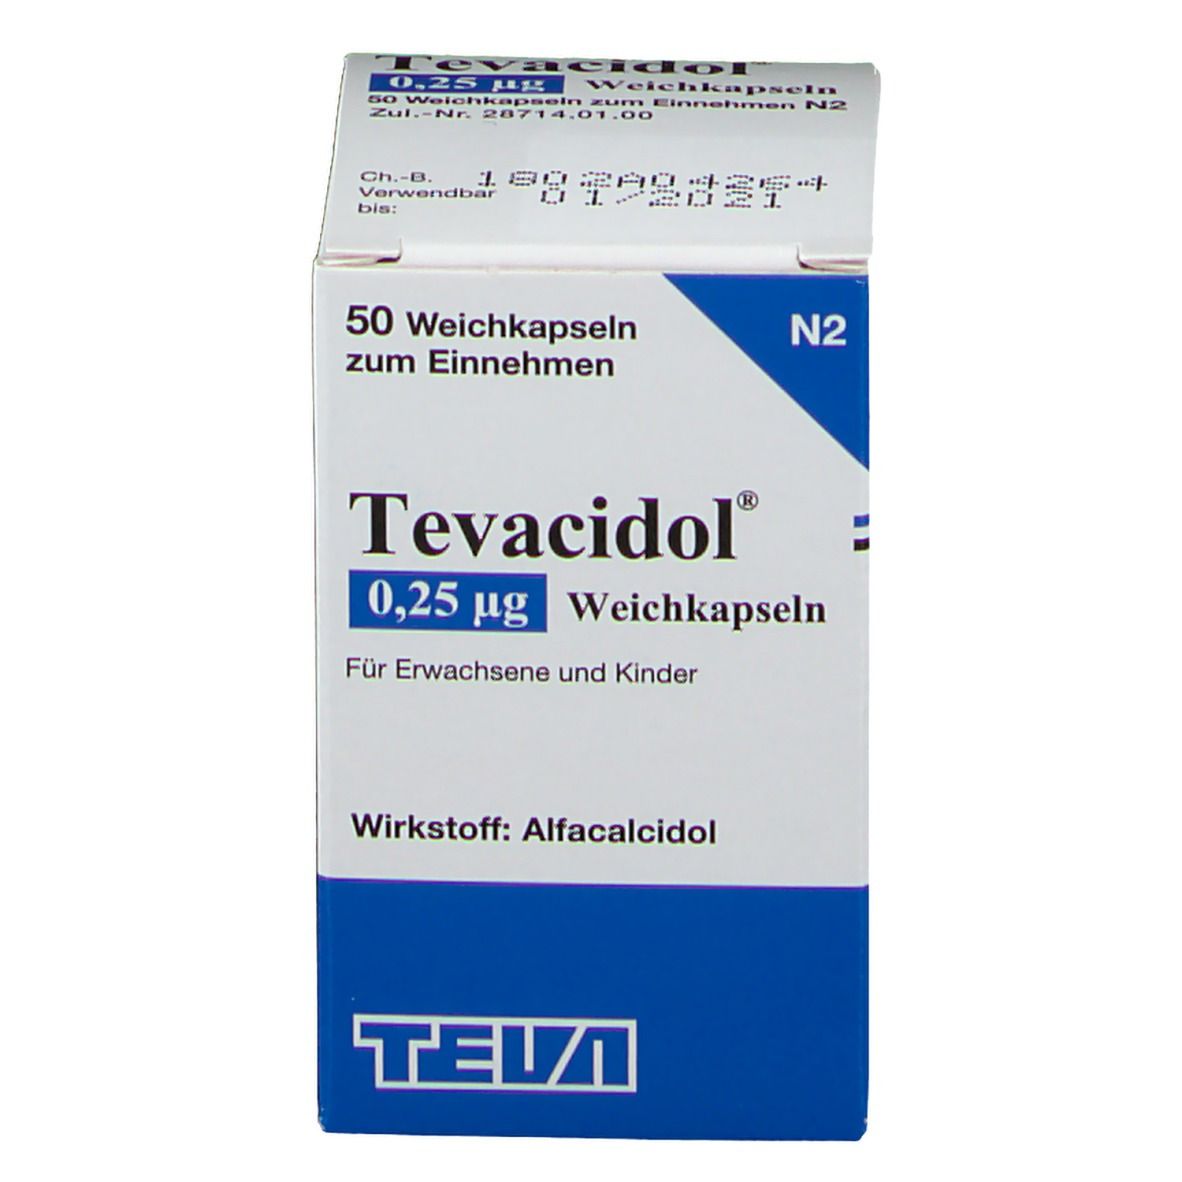 Tevacidol® 0,25 µg